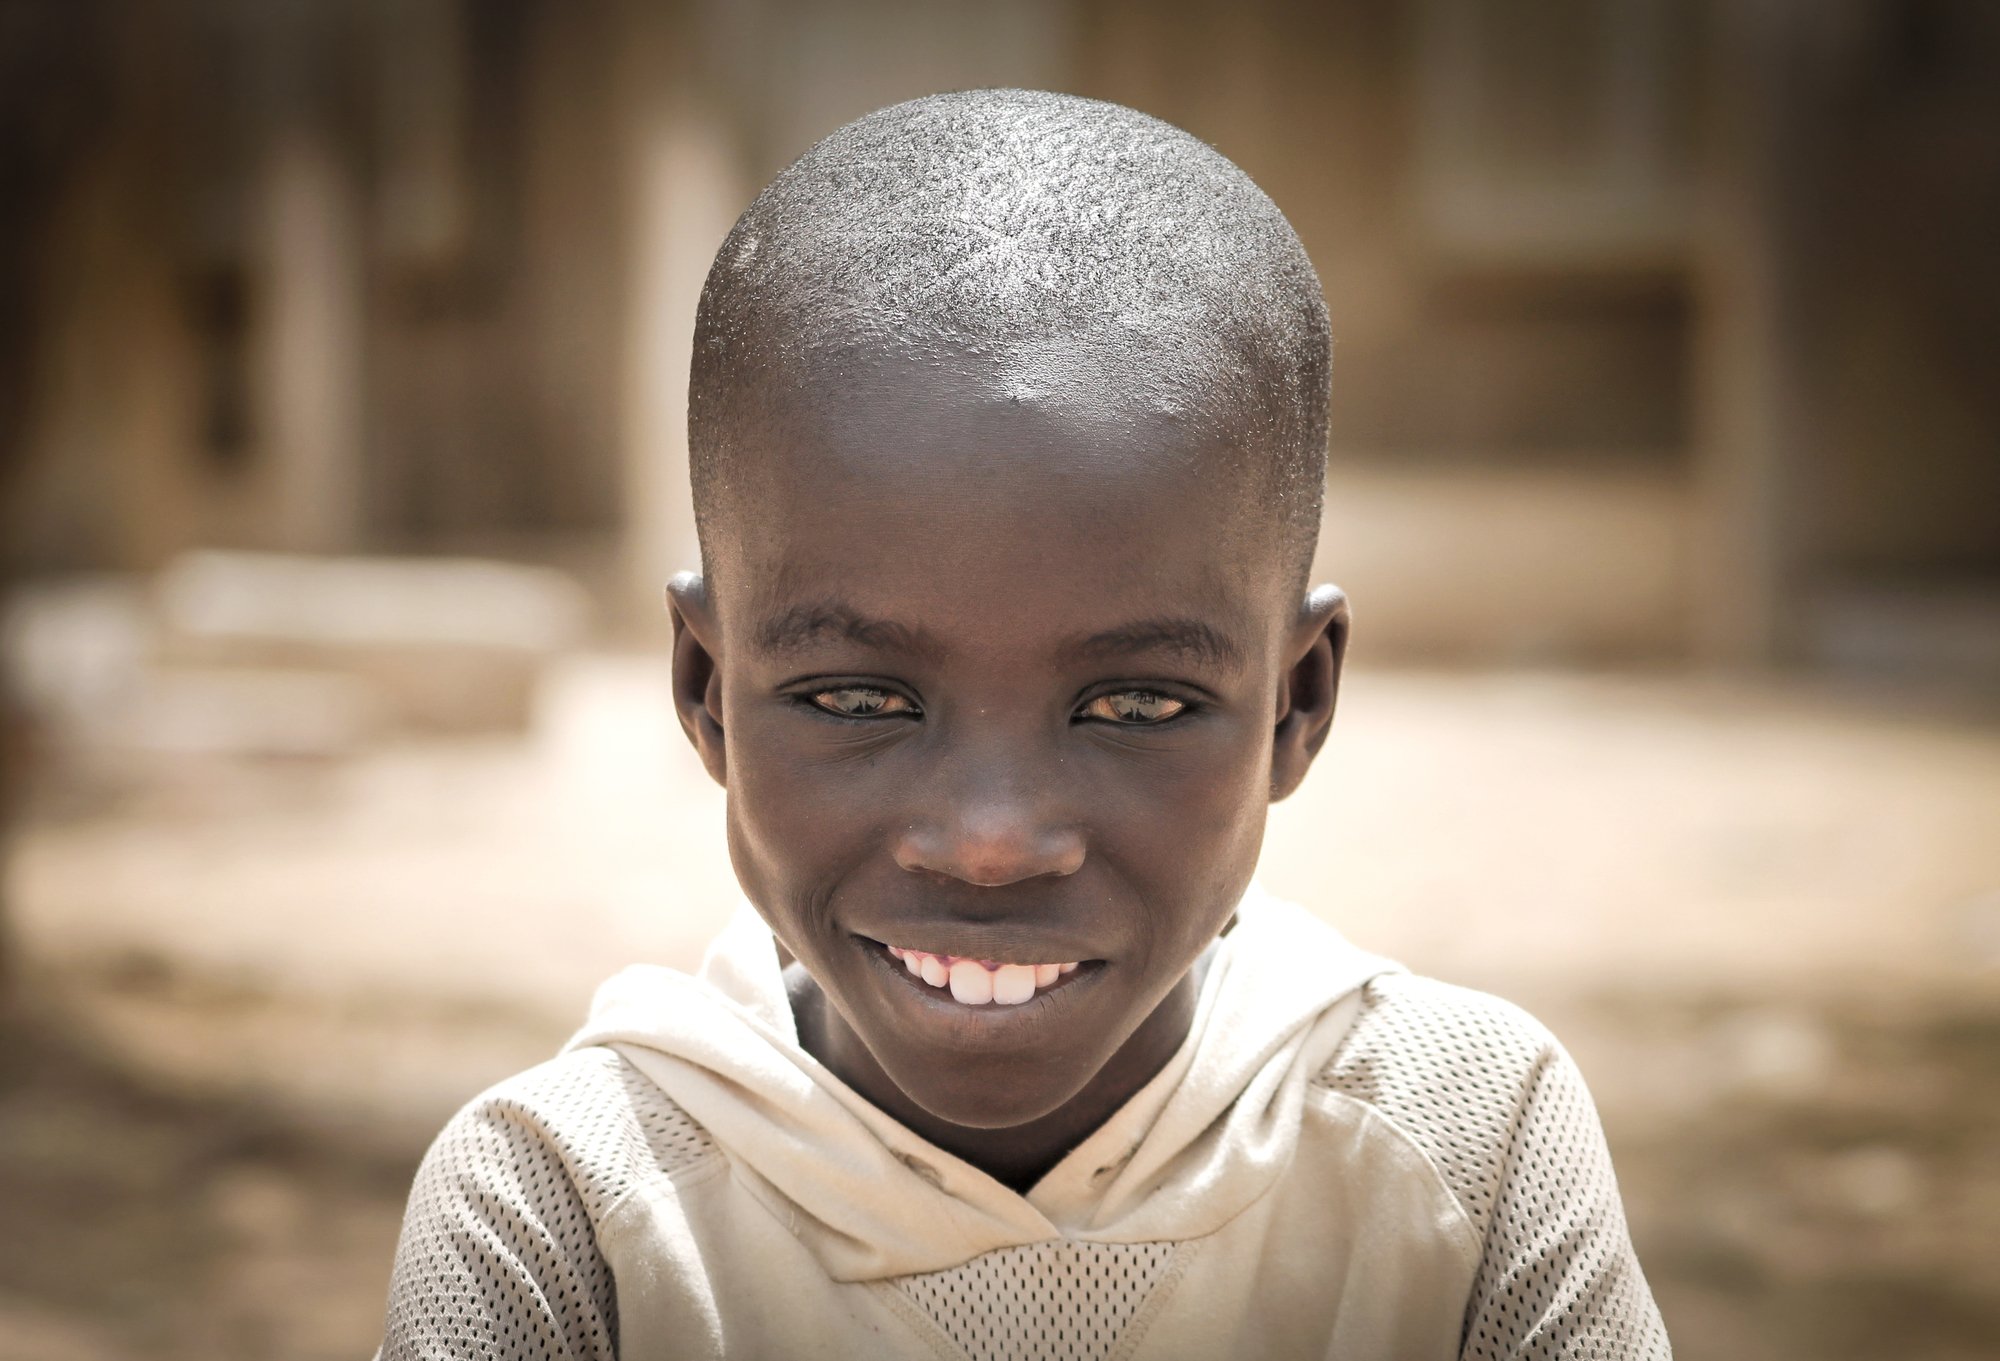 Il y a un an, nous vous racontions l'histoire d'Adboulaye, ce petit garçon sénégalais sauvé par Terre des hommes.